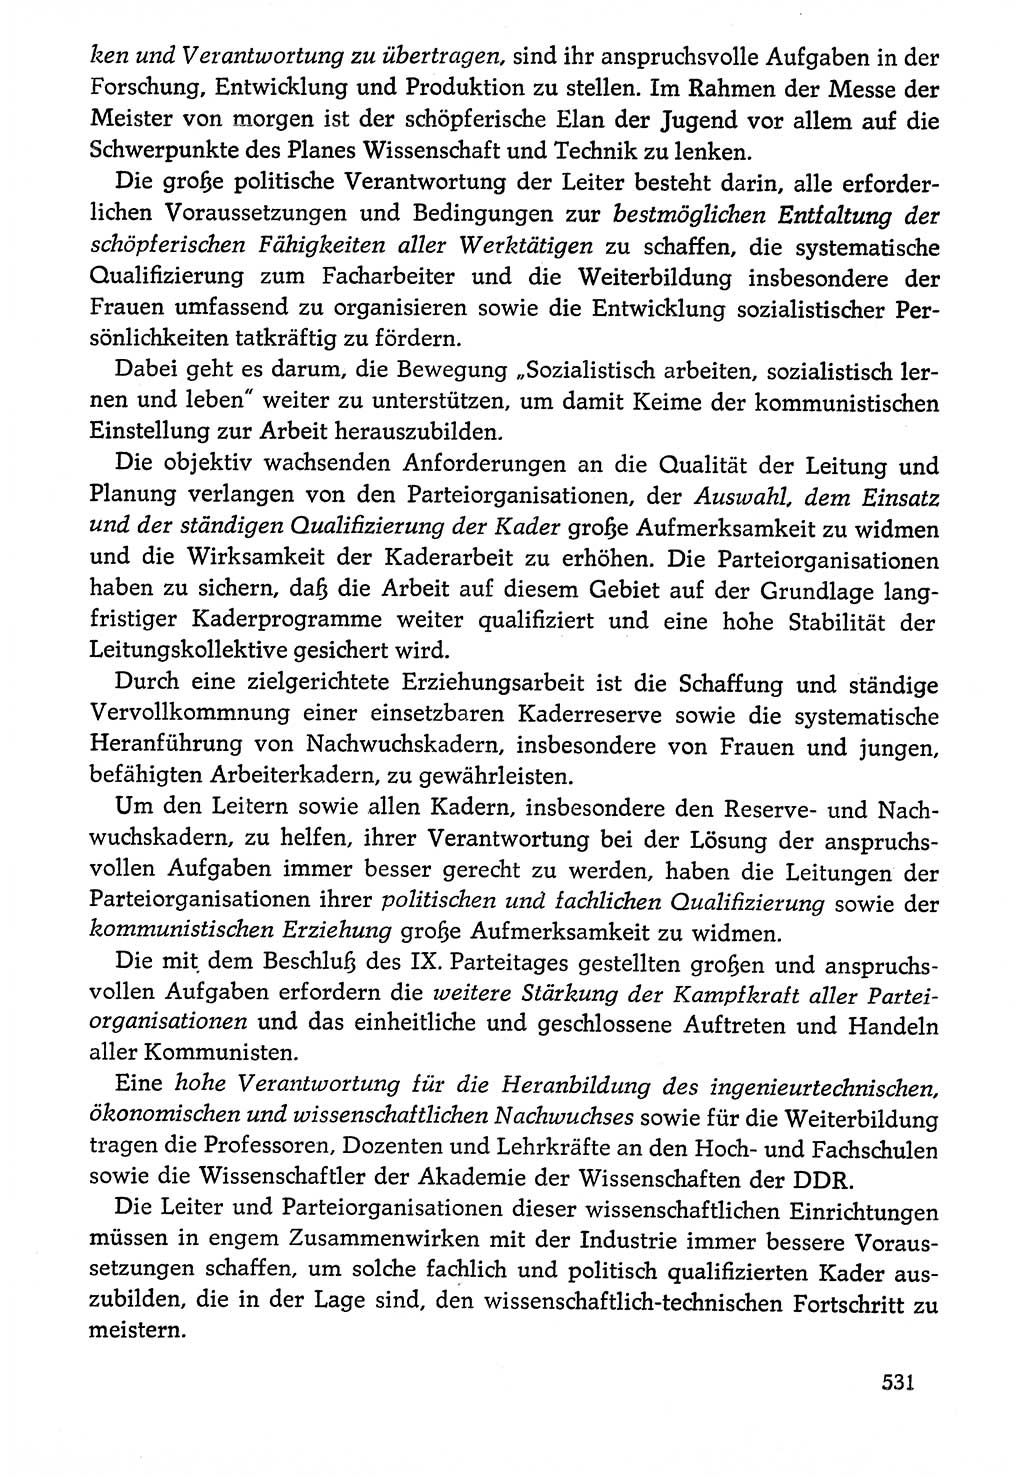 Dokumente der Sozialistischen Einheitspartei Deutschlands (SED) [Deutsche Demokratische Republik (DDR)] 1976-1977, Seite 531 (Dok. SED DDR 1976-1977, S. 531)